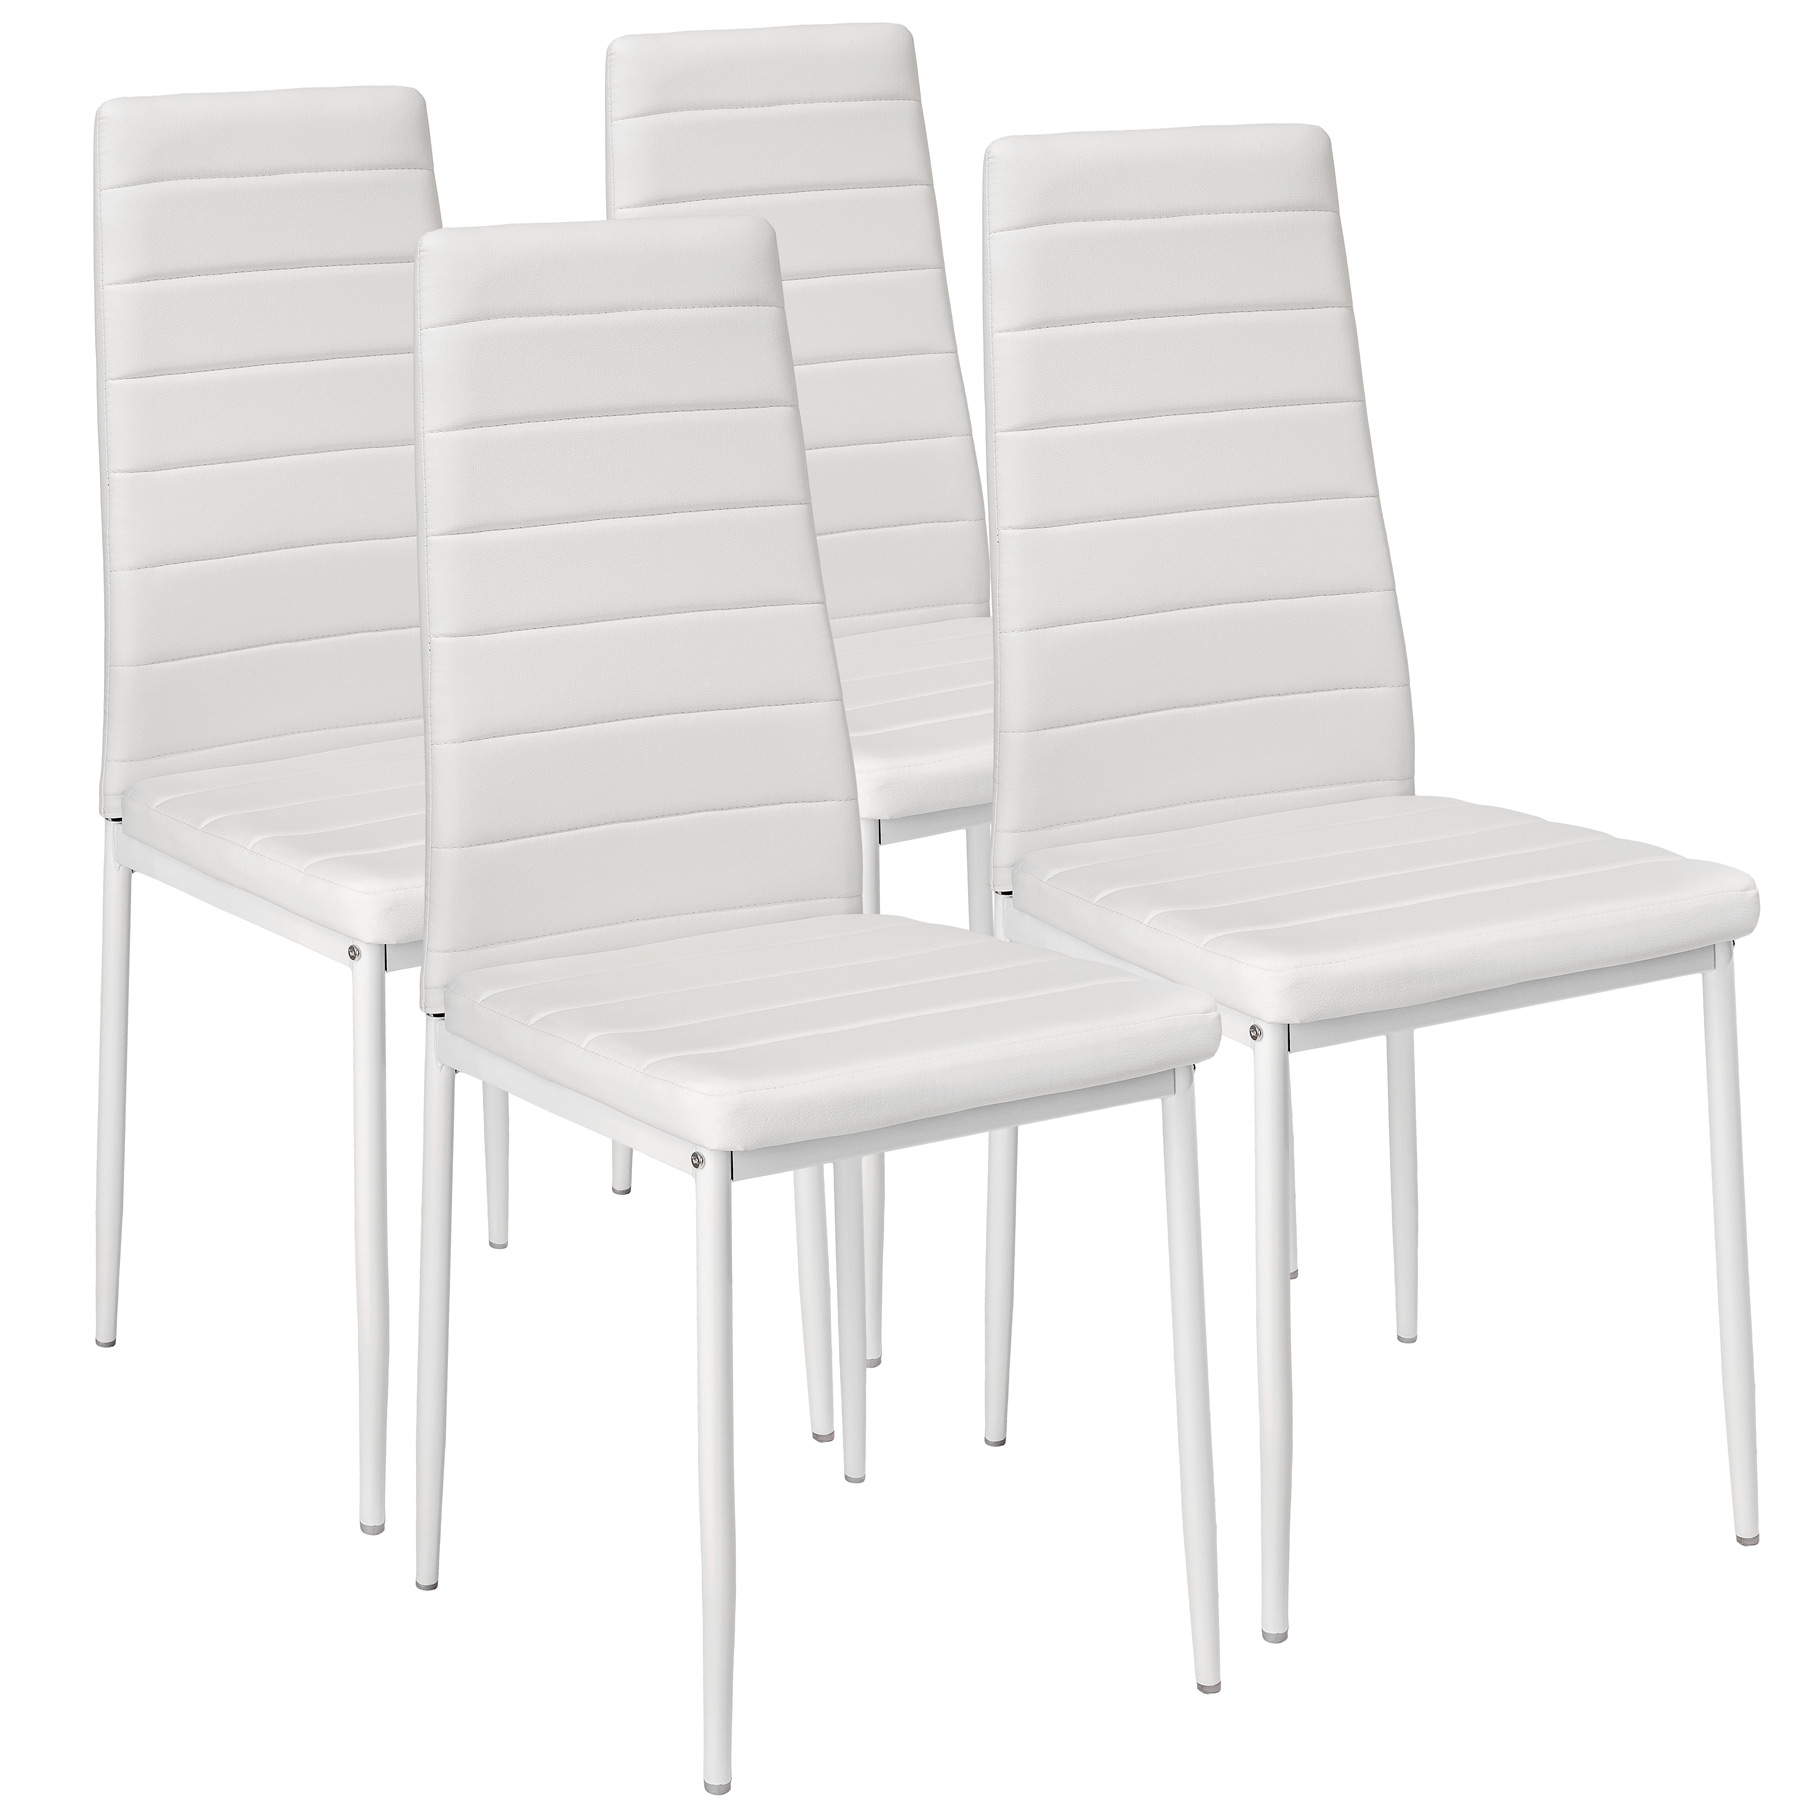 Купить кухонные стулья комплект. Комплект стульев 4 шт. Stool Group y801-v, белый. Ikea стул кухонный. Стул из экокожи вс-017 2 шт белый. Икеа стулья кухонные мягкие.